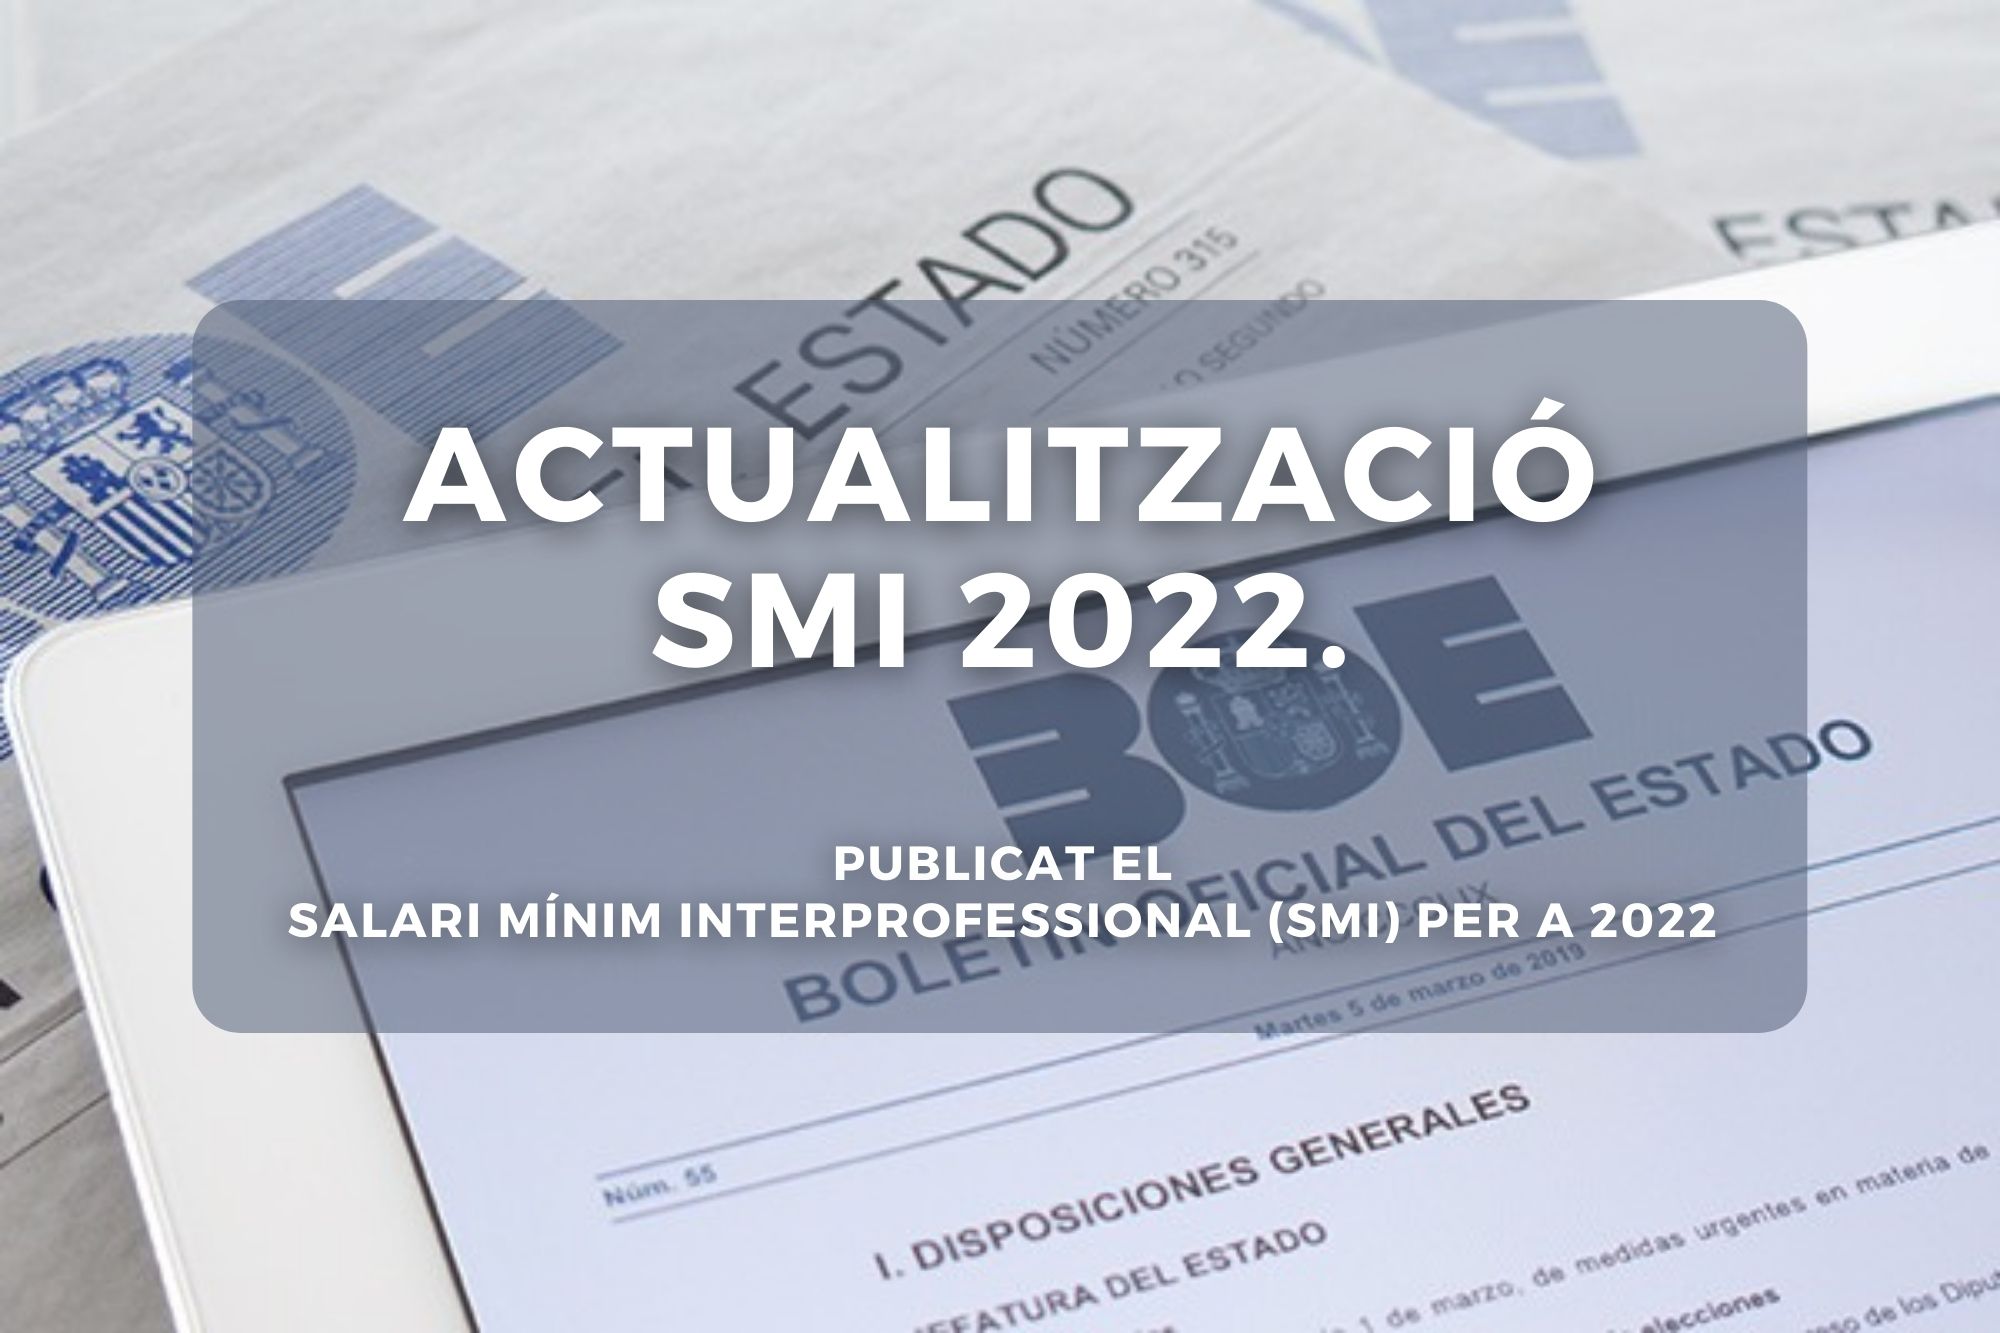 Actualització SMI: Publicat El Salari Mínim Interprofessional Per A 2022